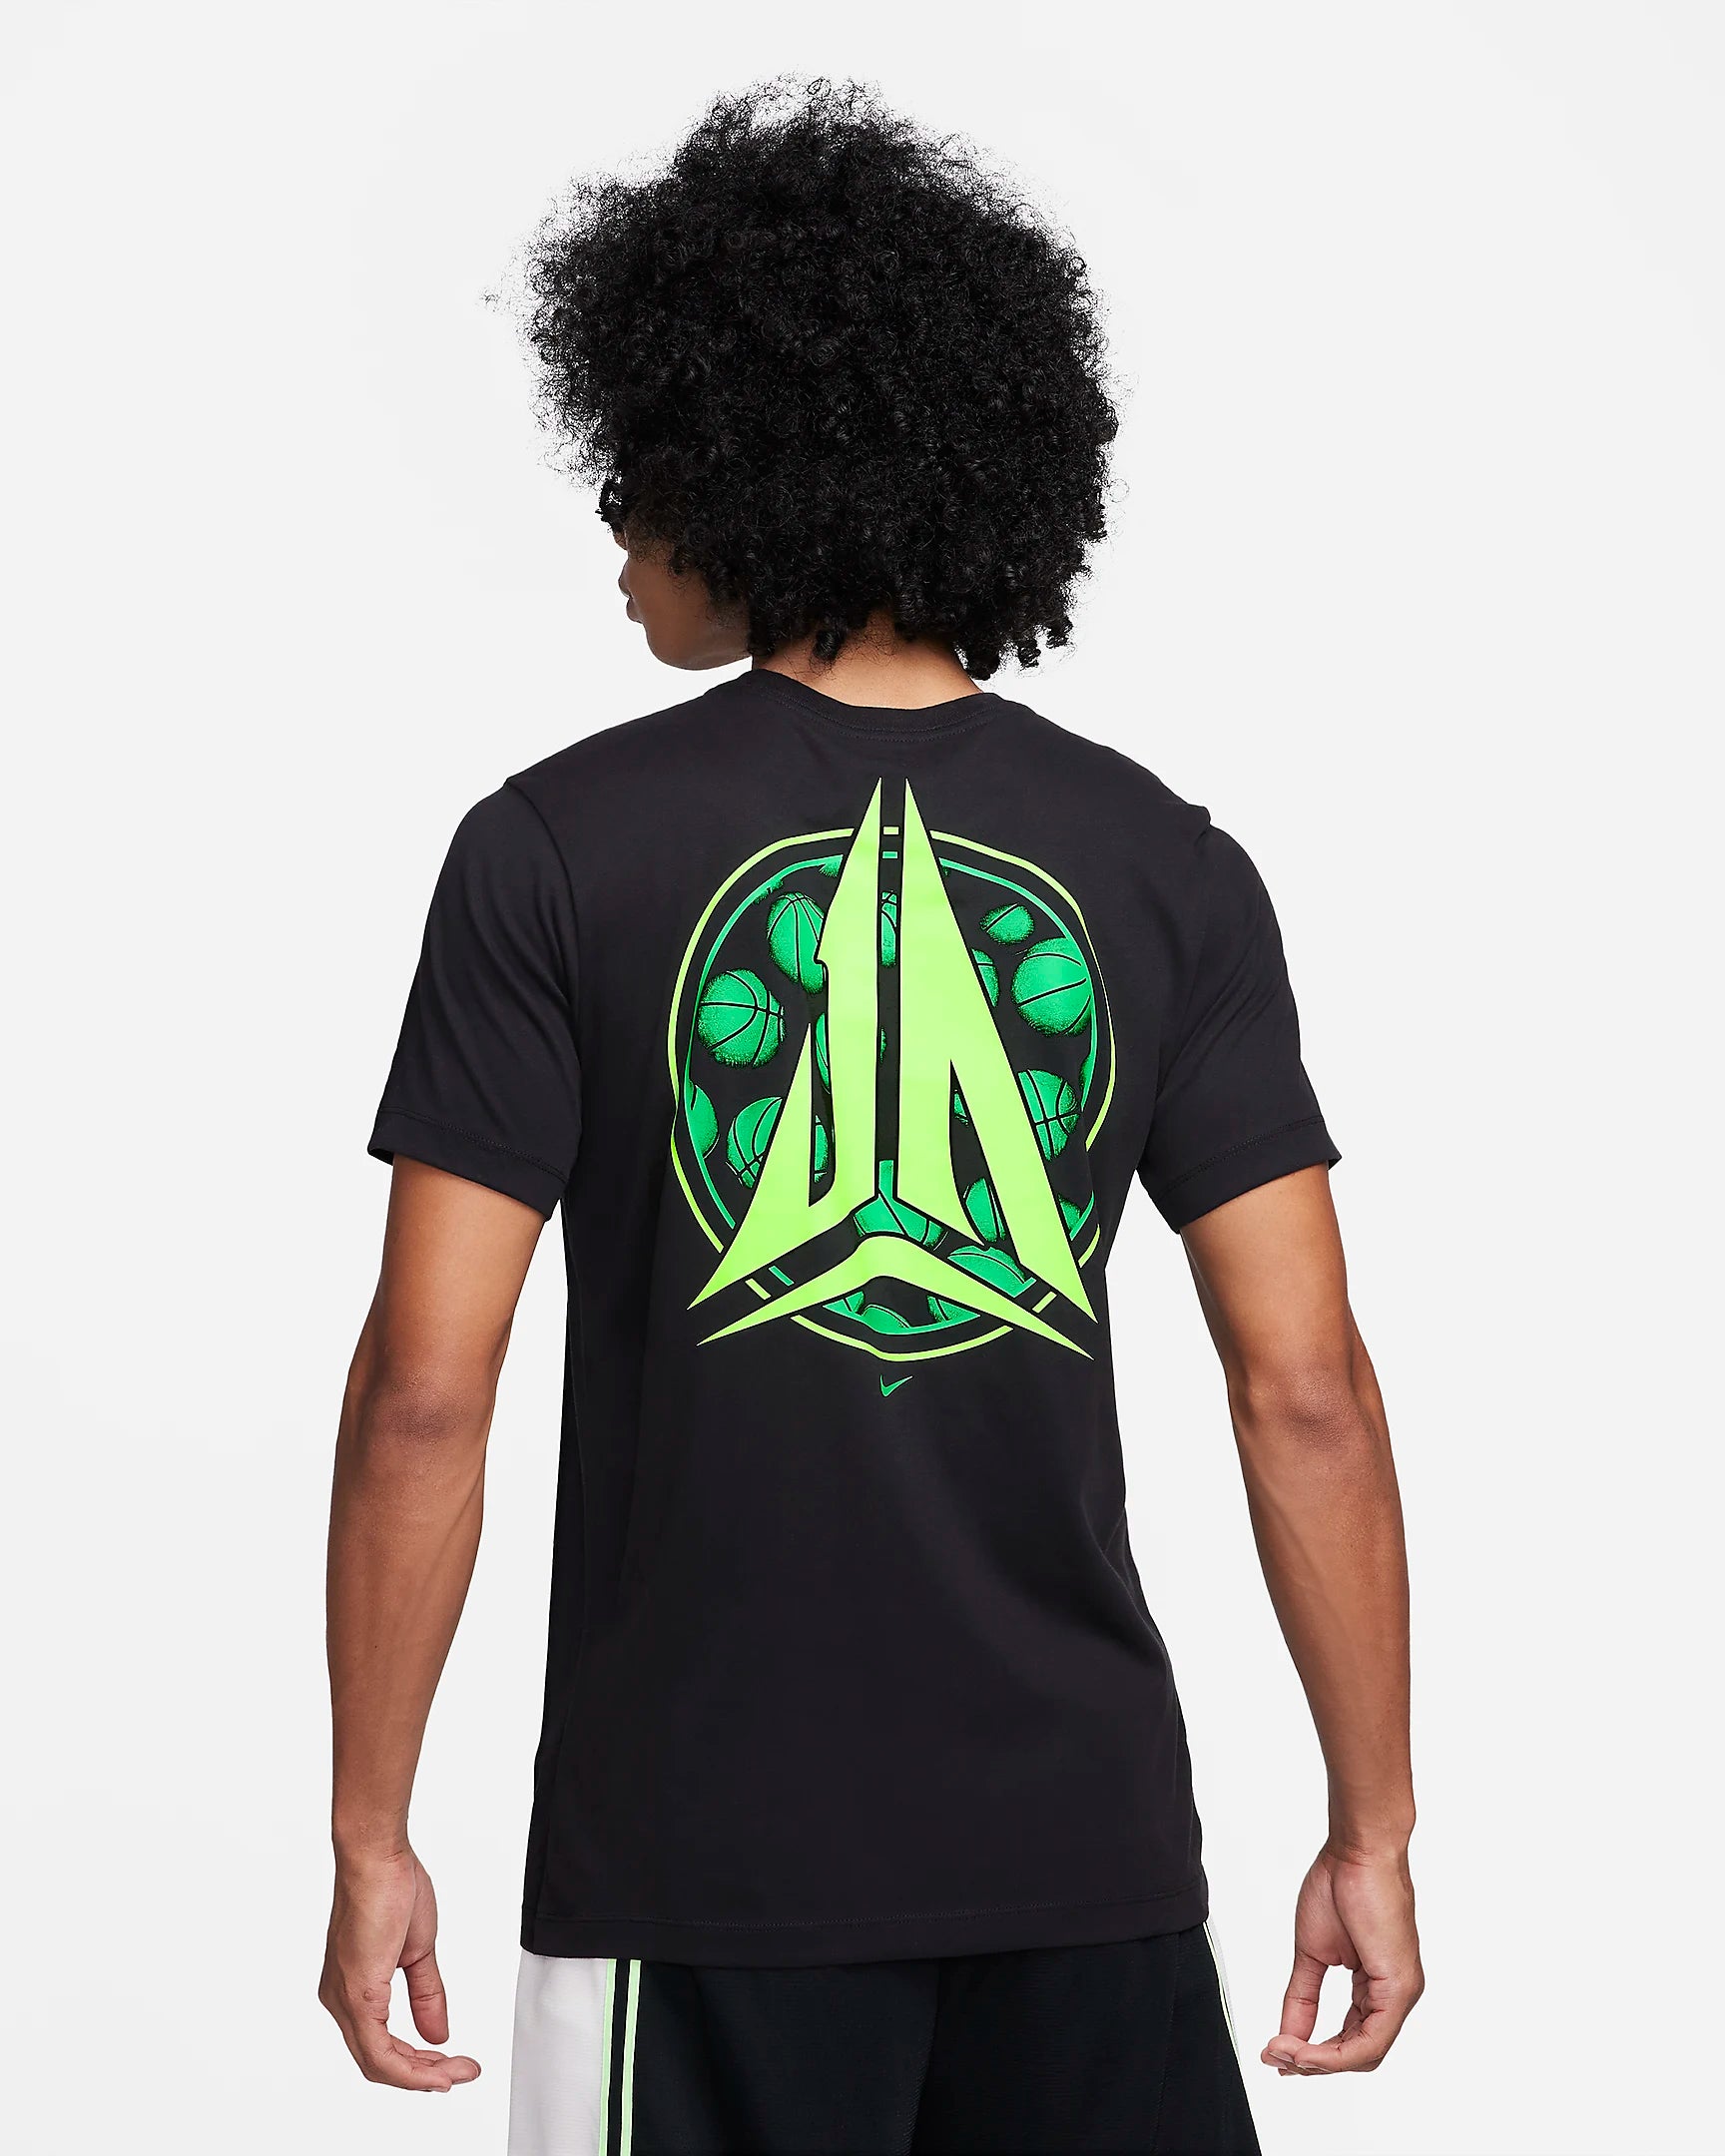 JA Men's Nike Dri-FIT Basketball T-shirt